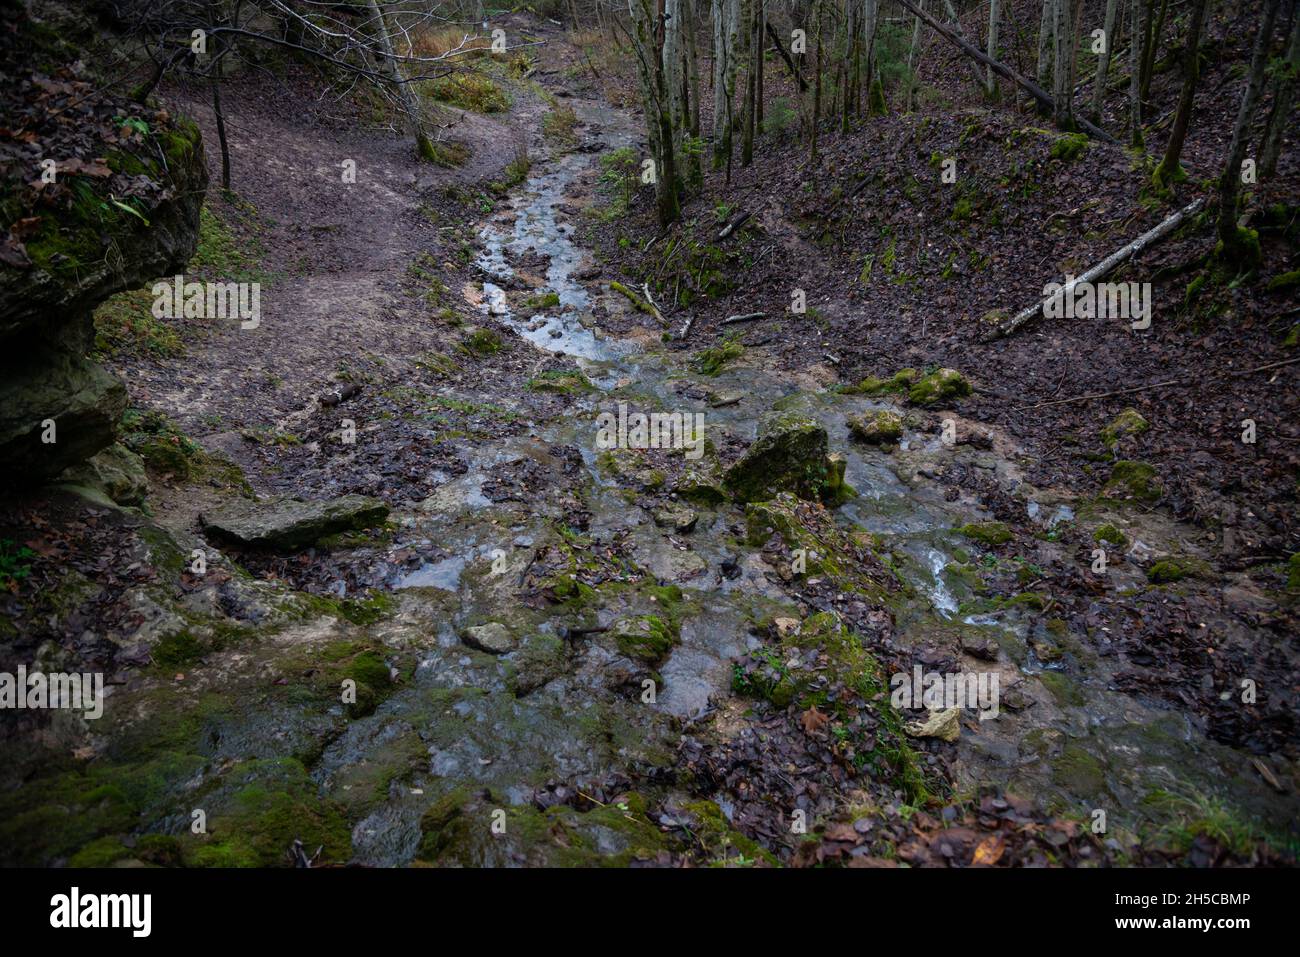 roccia sabbiosa lungo la quale scorre una chiara foresta acqua sorgiva formando una cascata. Pietre con muschio verde. Foto Stock